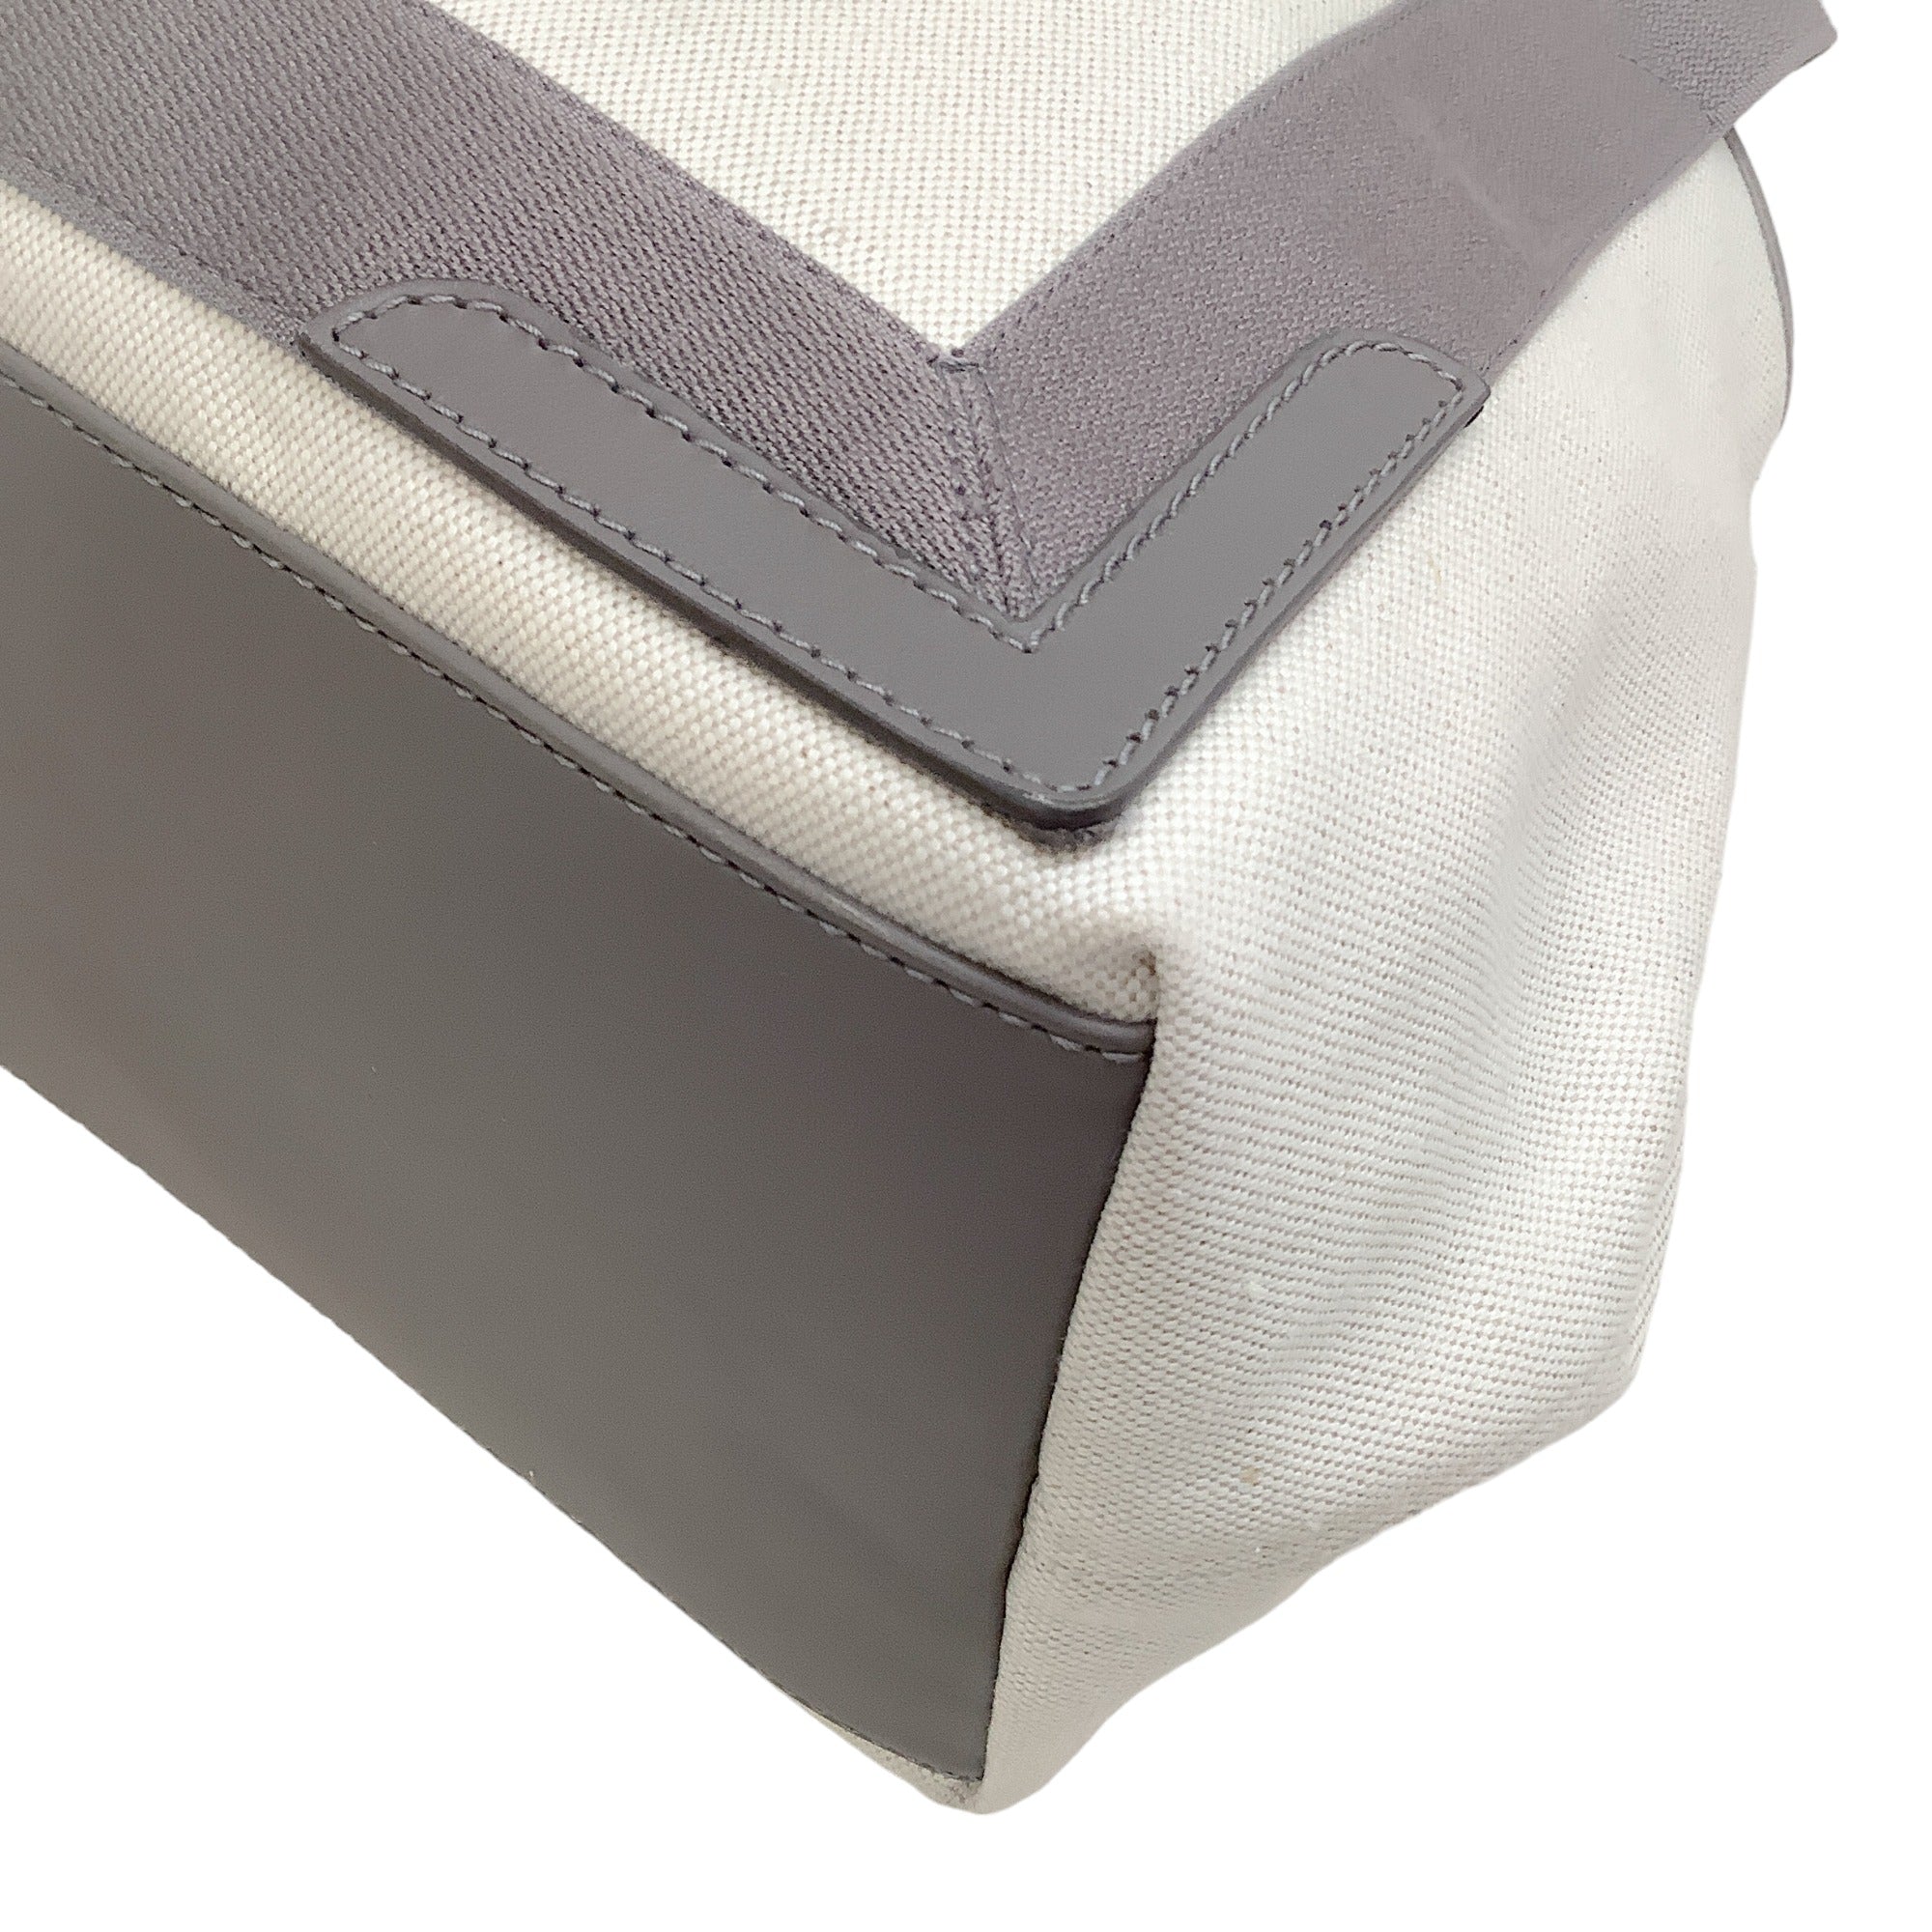 Balenciaga Grey / Ivory Canvas Logo Cabas Tote Bag